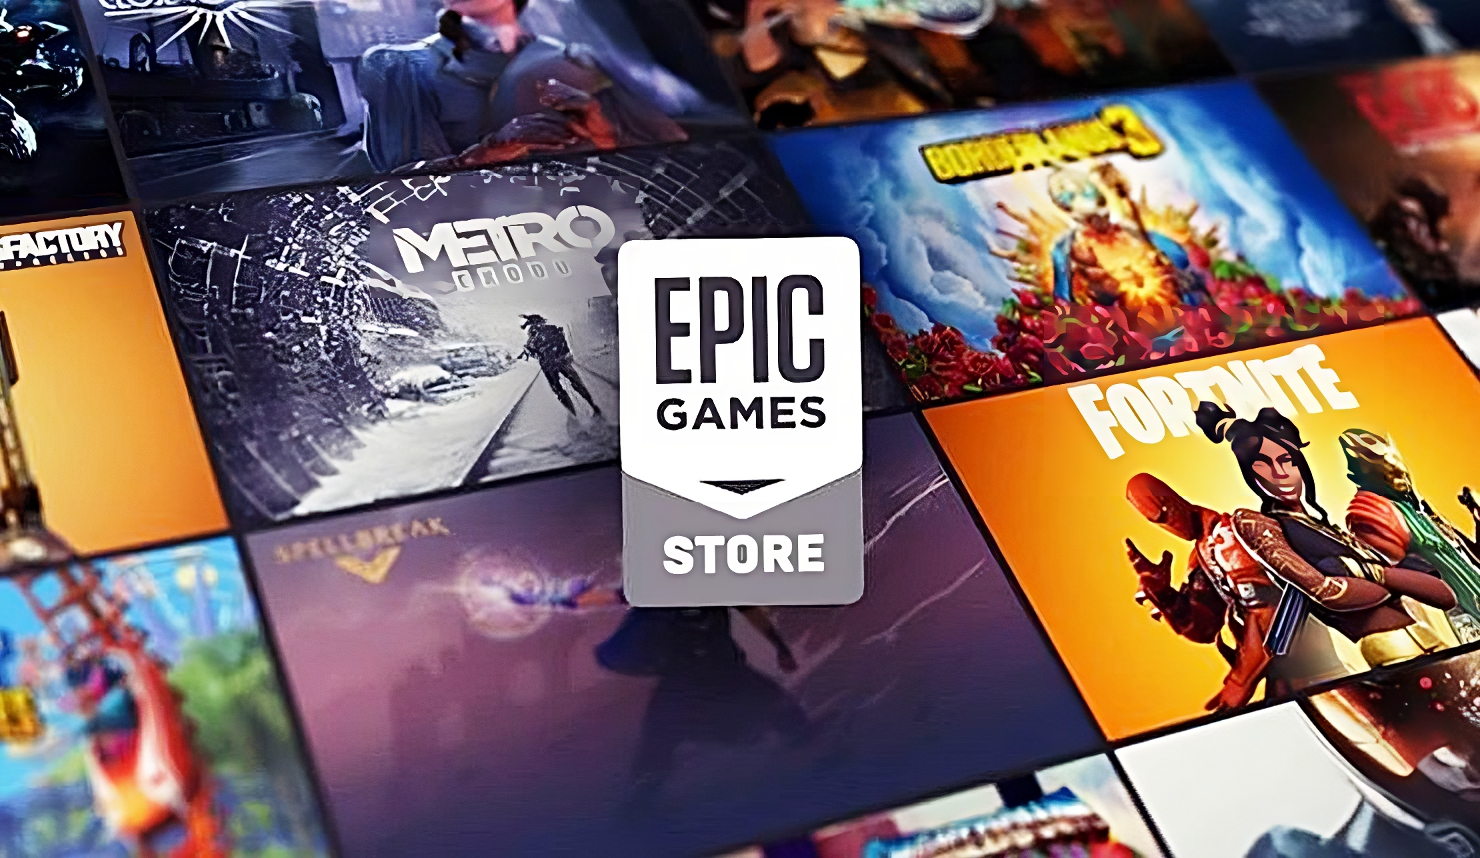 Epic Games ストアで 2 月 8 日に 2 つの無料ゲームをプレゼント